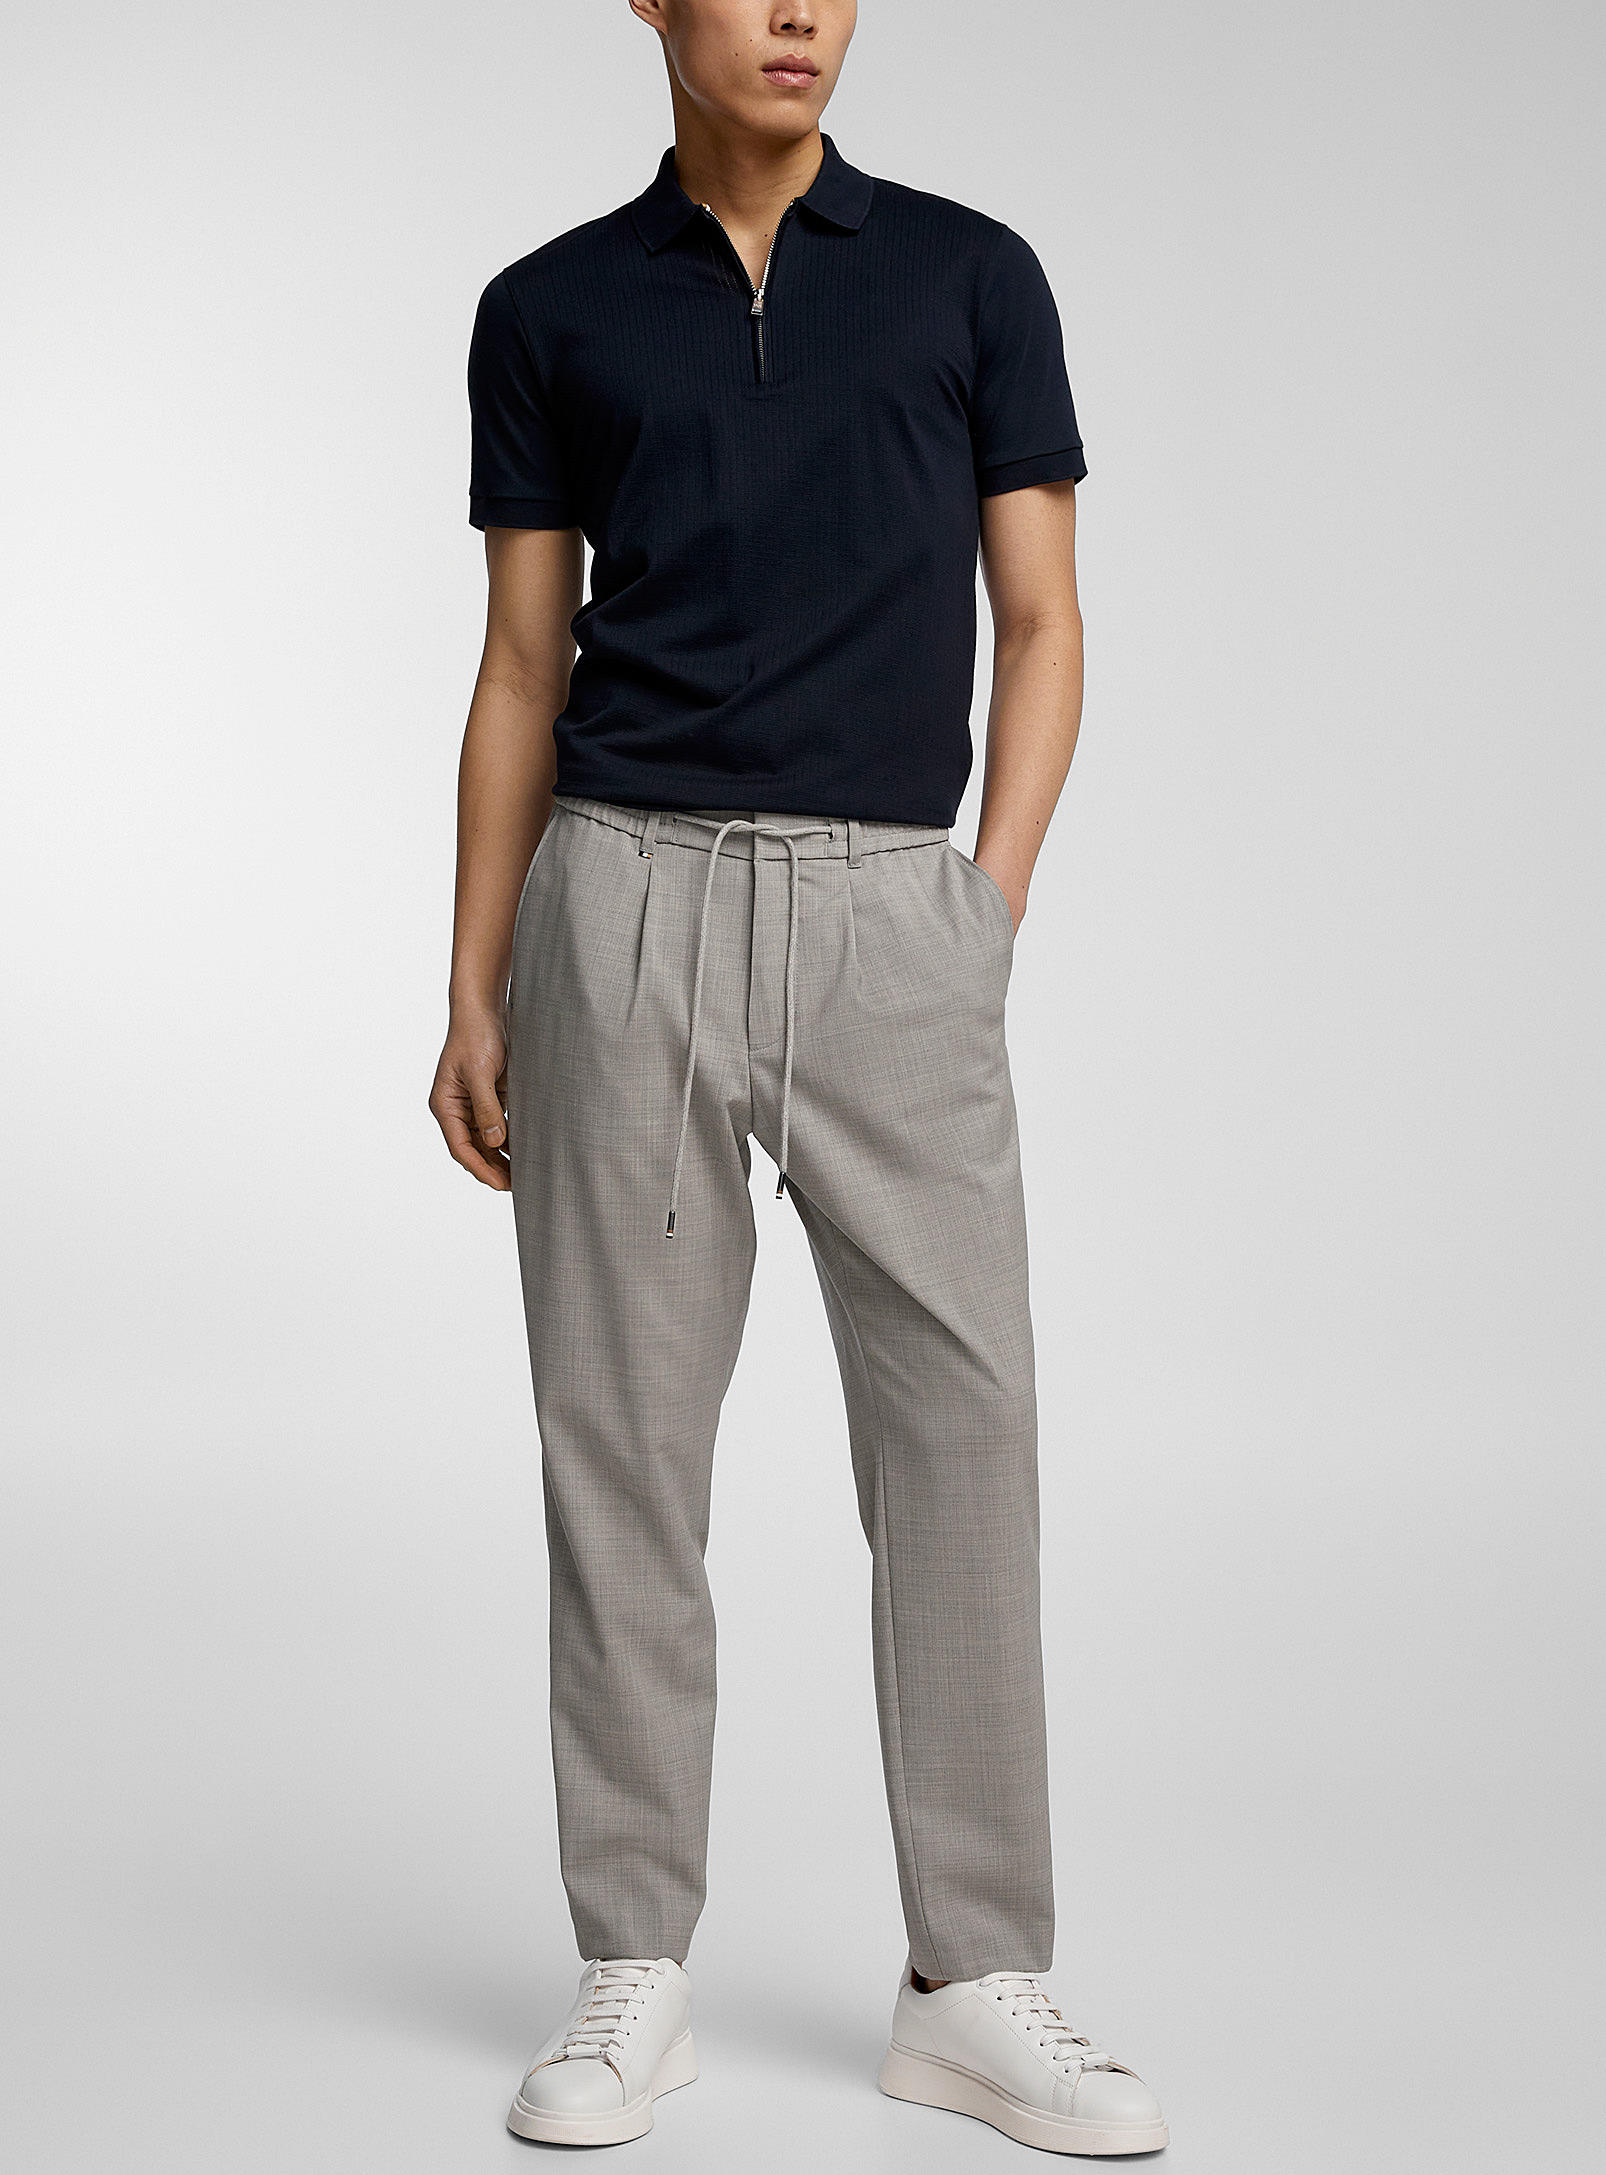 BOSS - Le pantalon gris clair taille élastique